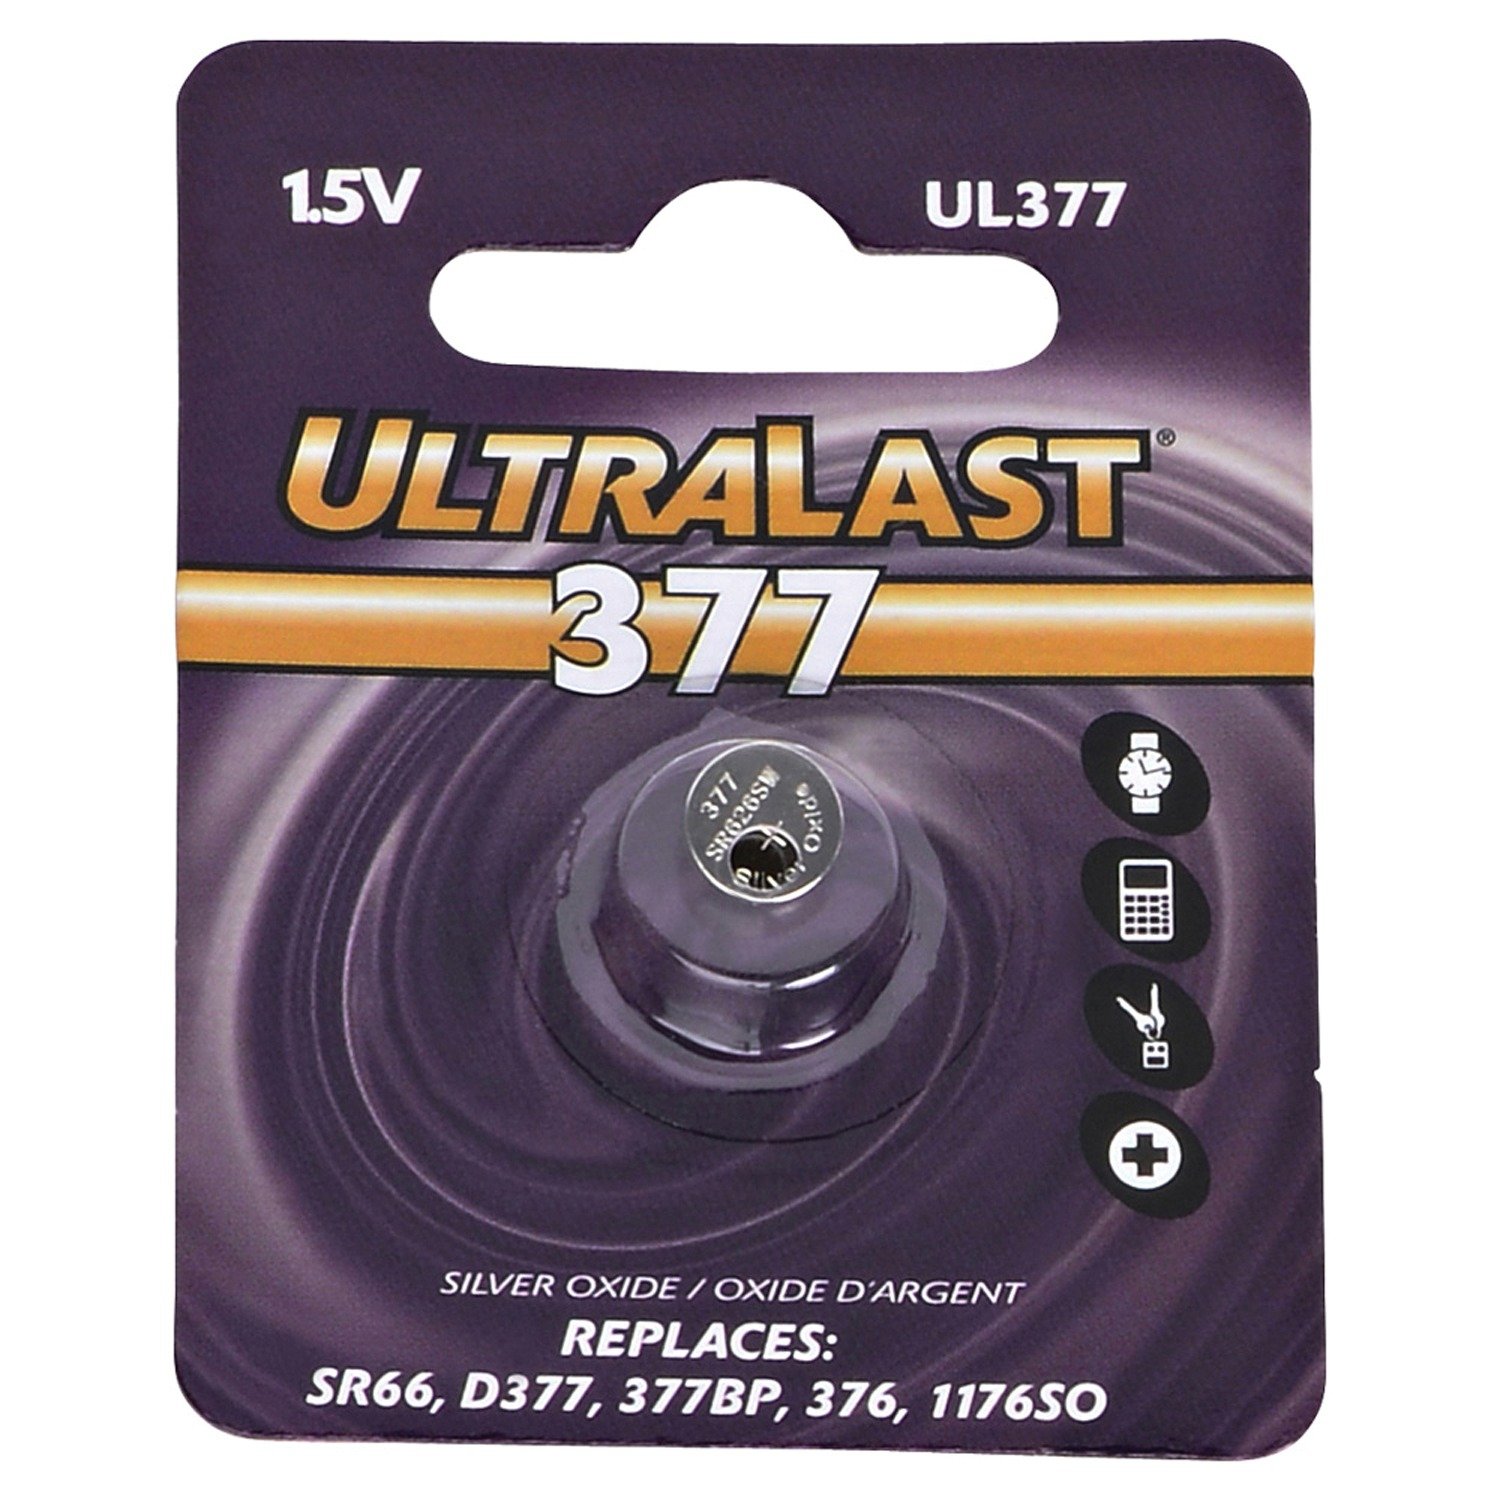 ULTRALAST UL377 Watch Battery